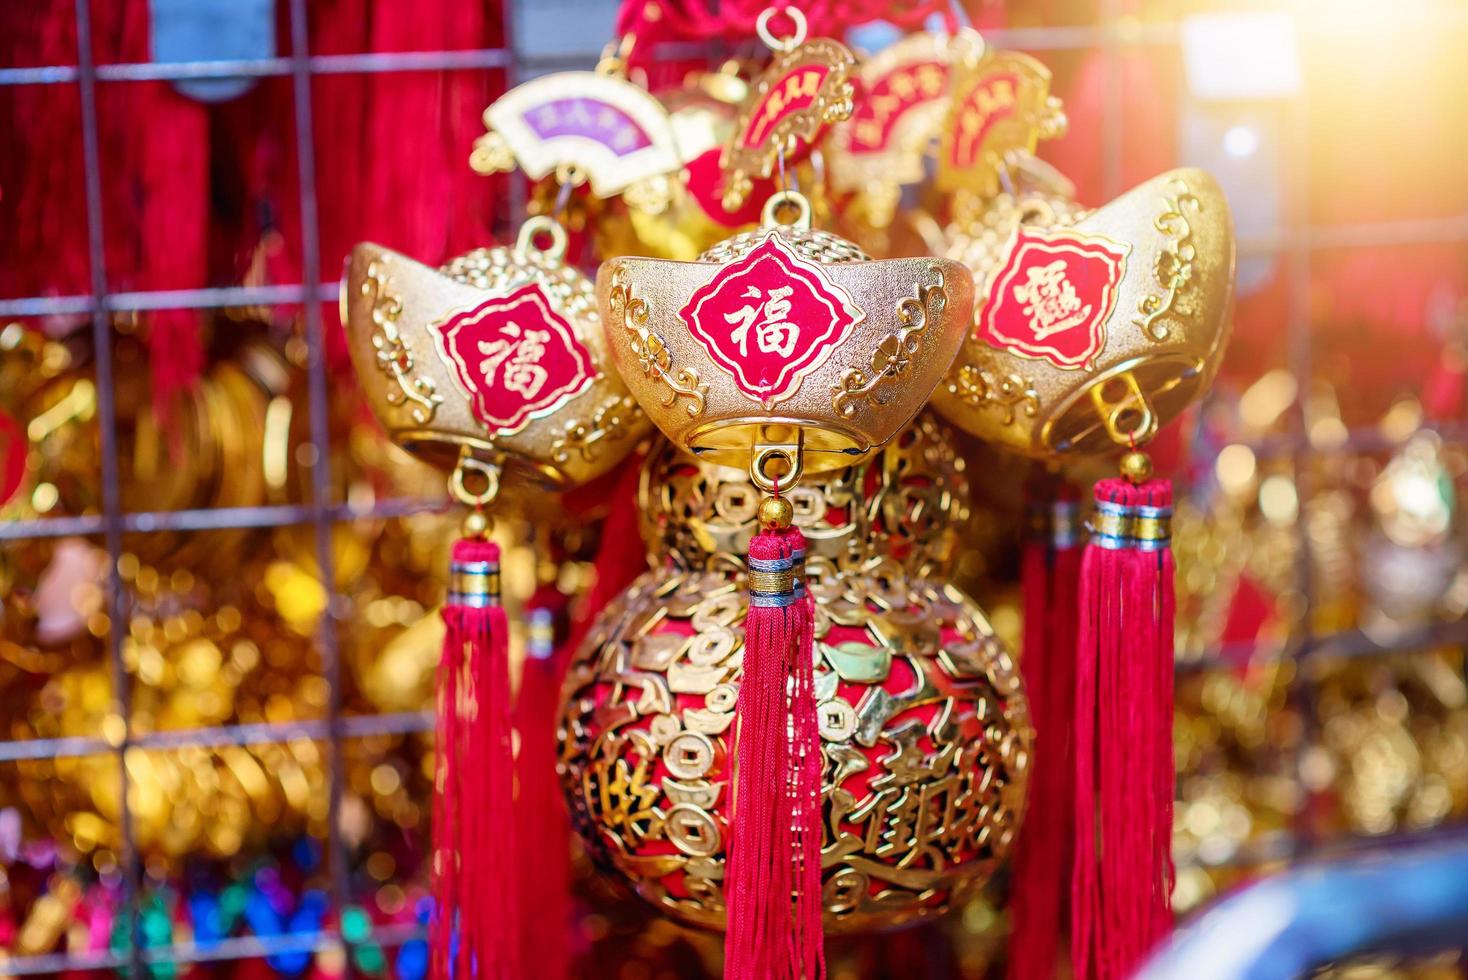 decoraciones del festival de año nuevo chino. foto